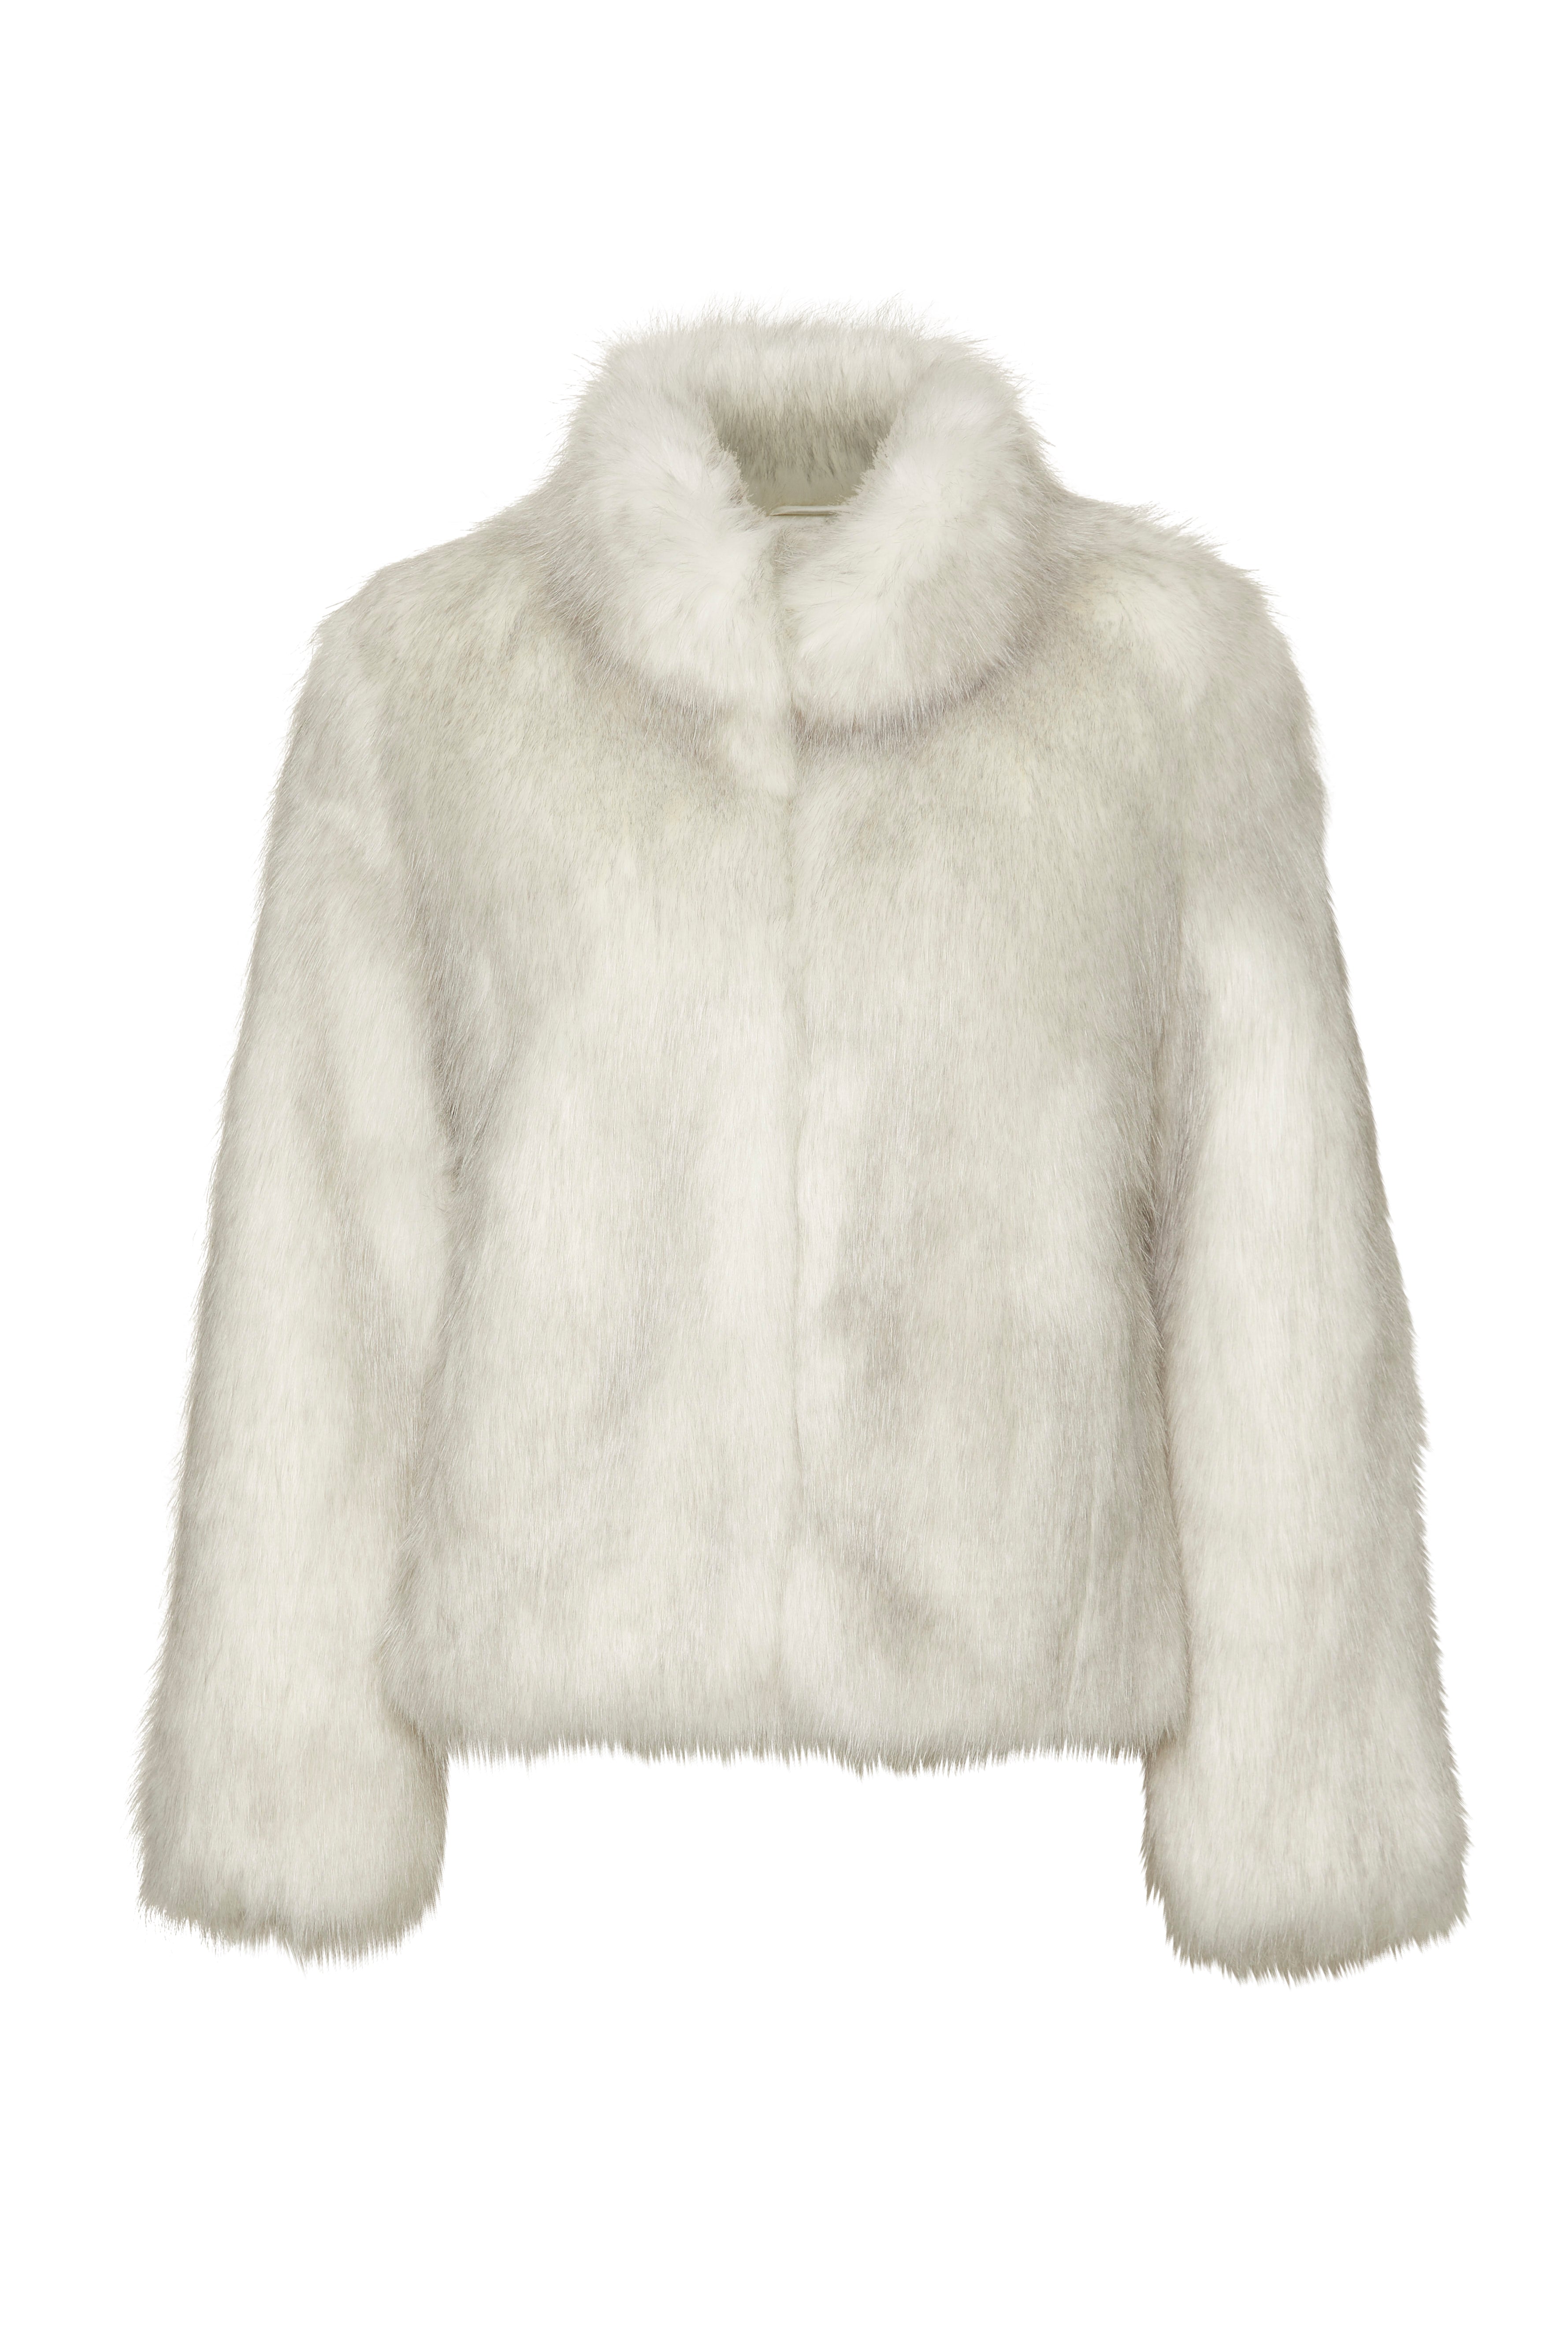 Unreal Fur Delish Jacket